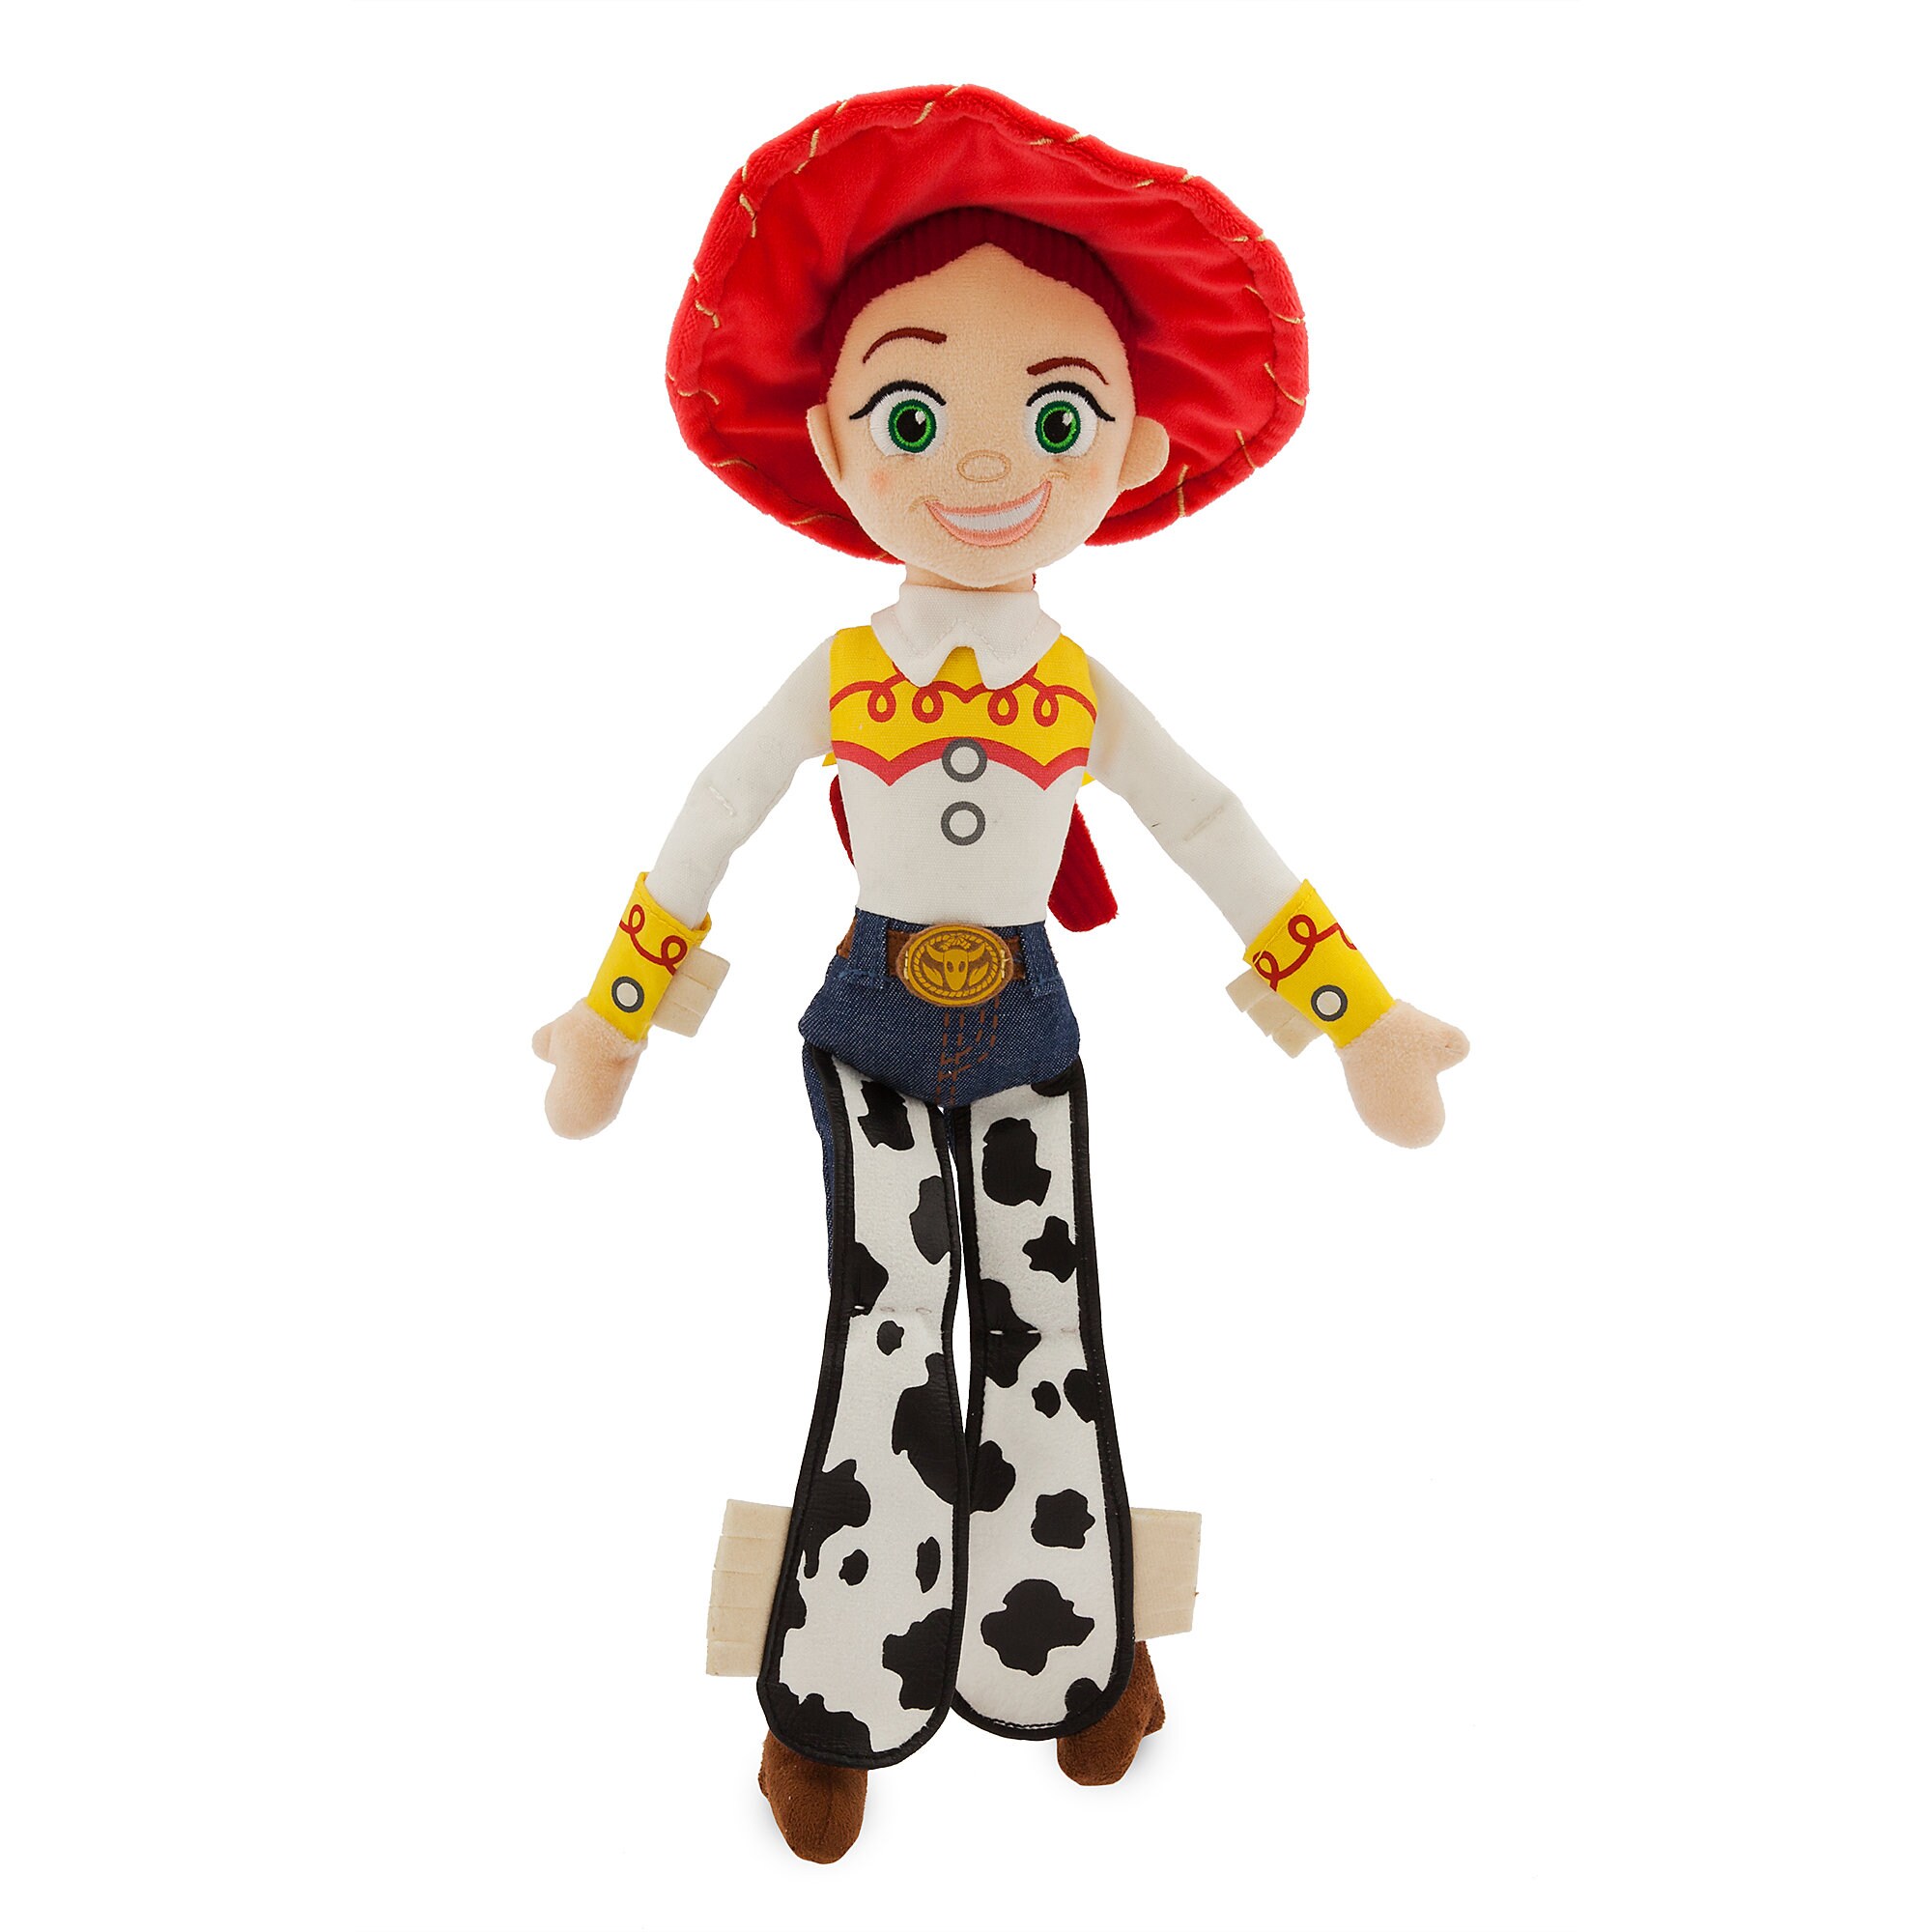 Jessie Plush - Toy Story 4 - Medium - 16 1/2''